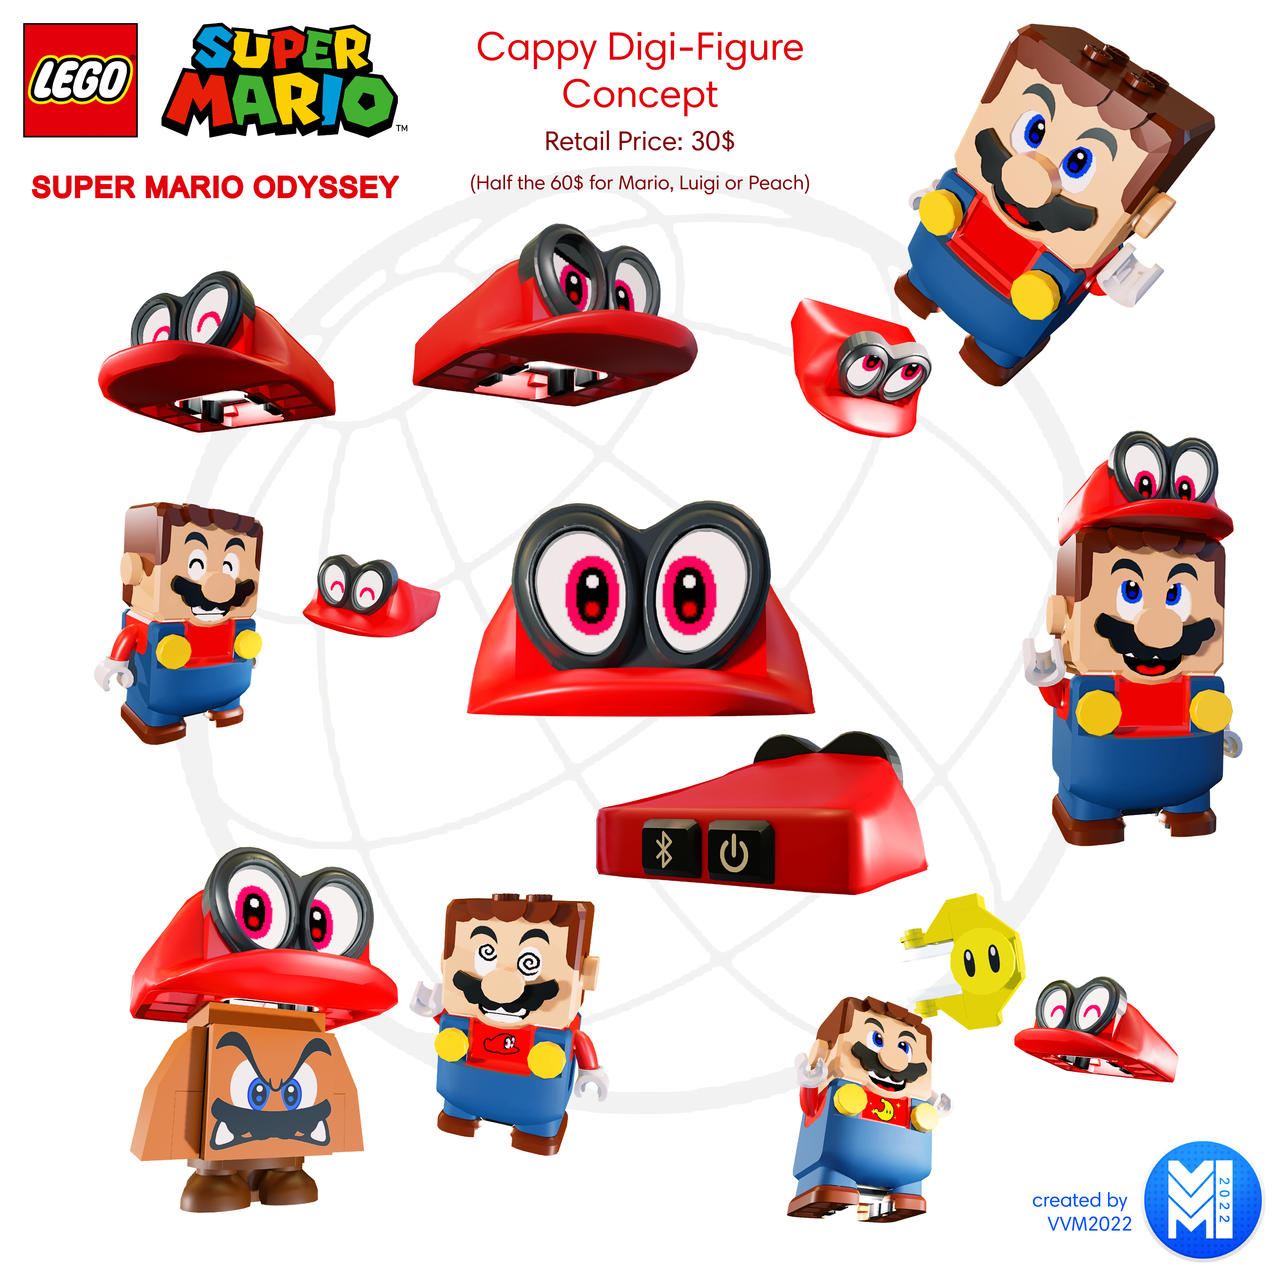 LEGO Super Mario Odyssey - Cappy Design by VVM2022 by VinVinMario on  DeviantArt